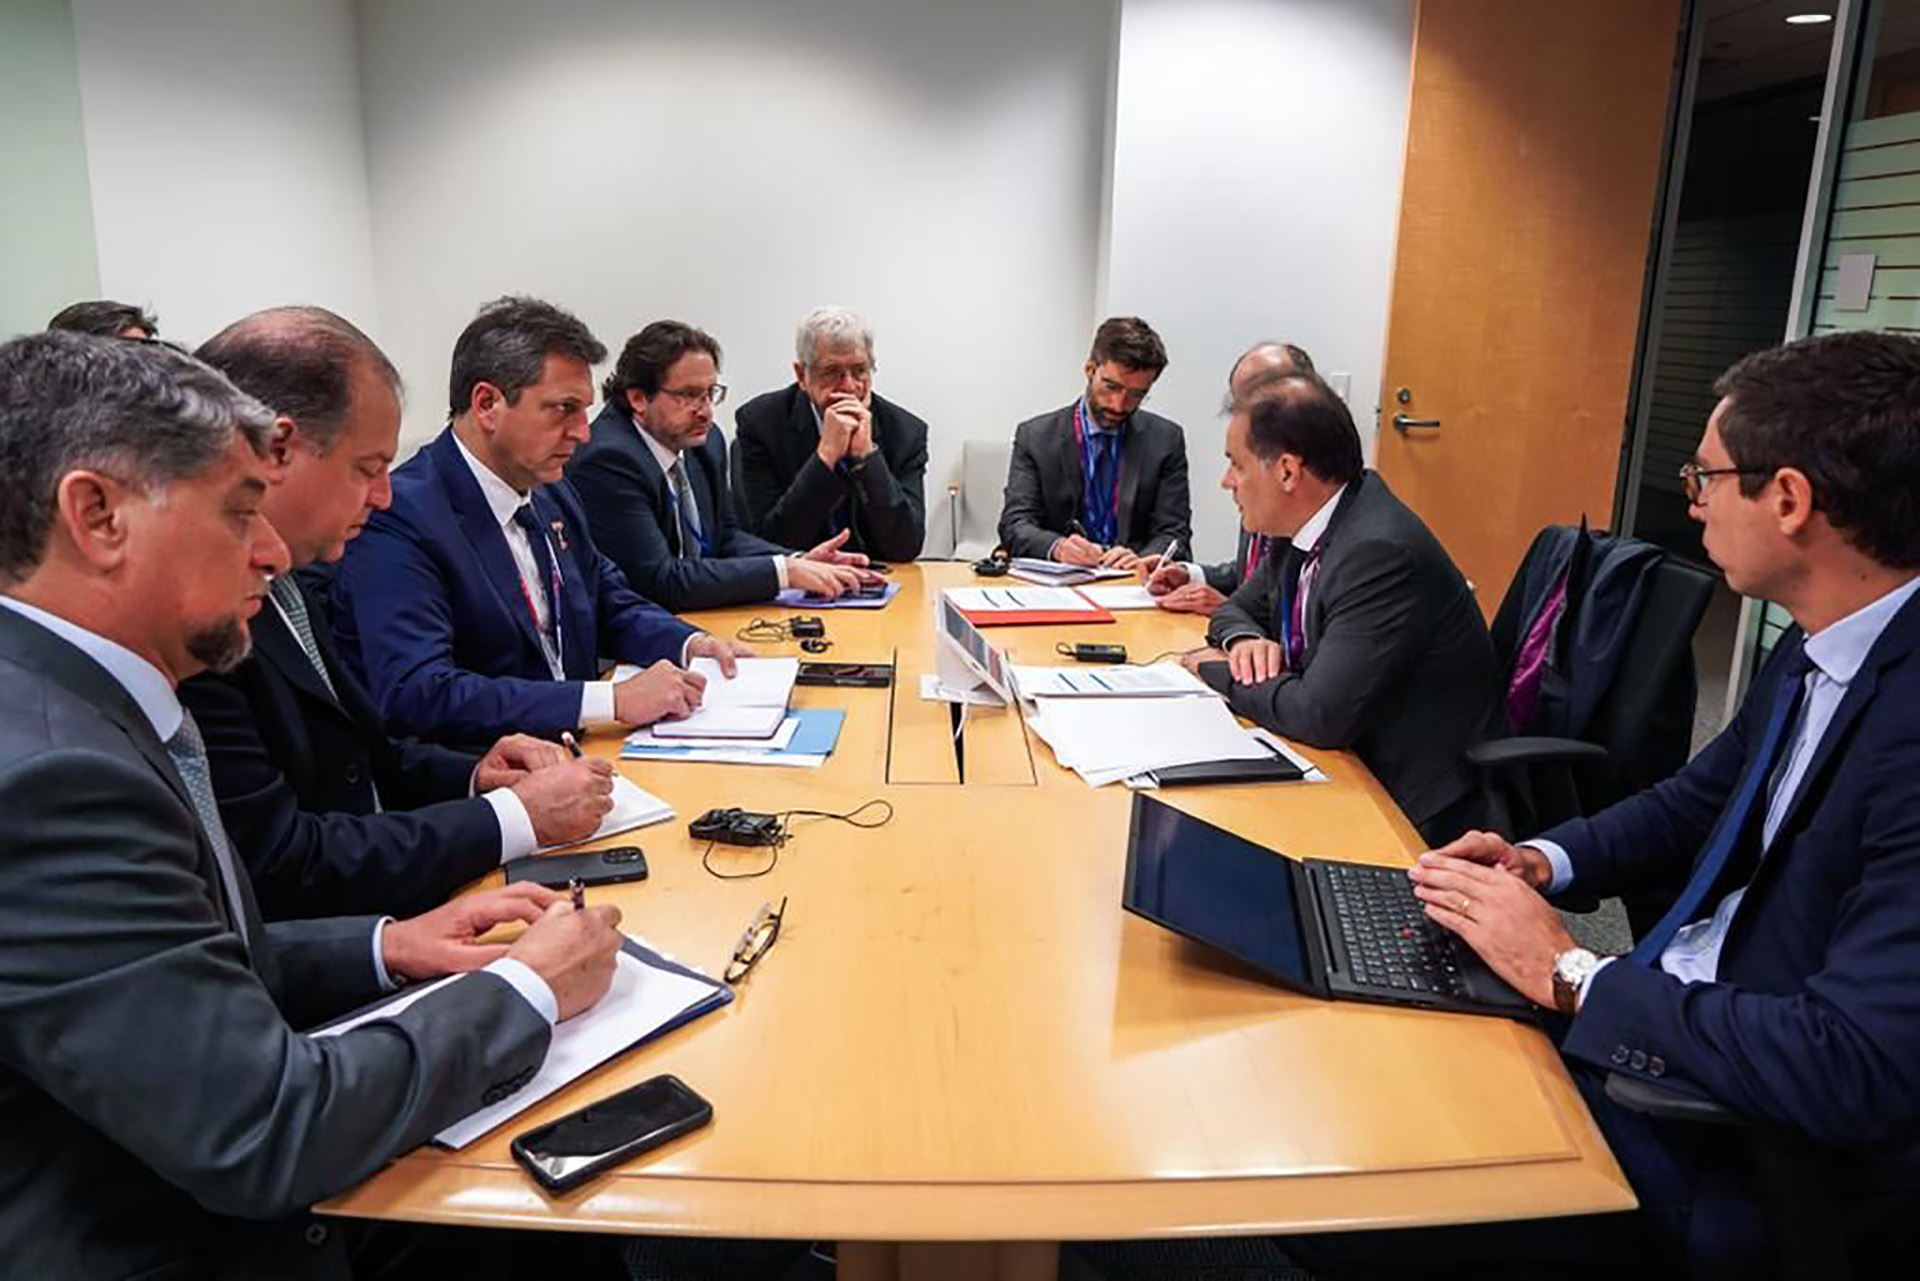 Il team economico argentino ha preso contatto con le autorità del Club di Parigi durante l'ultima riunione annuale del Fondo monetario internazionale a Washington